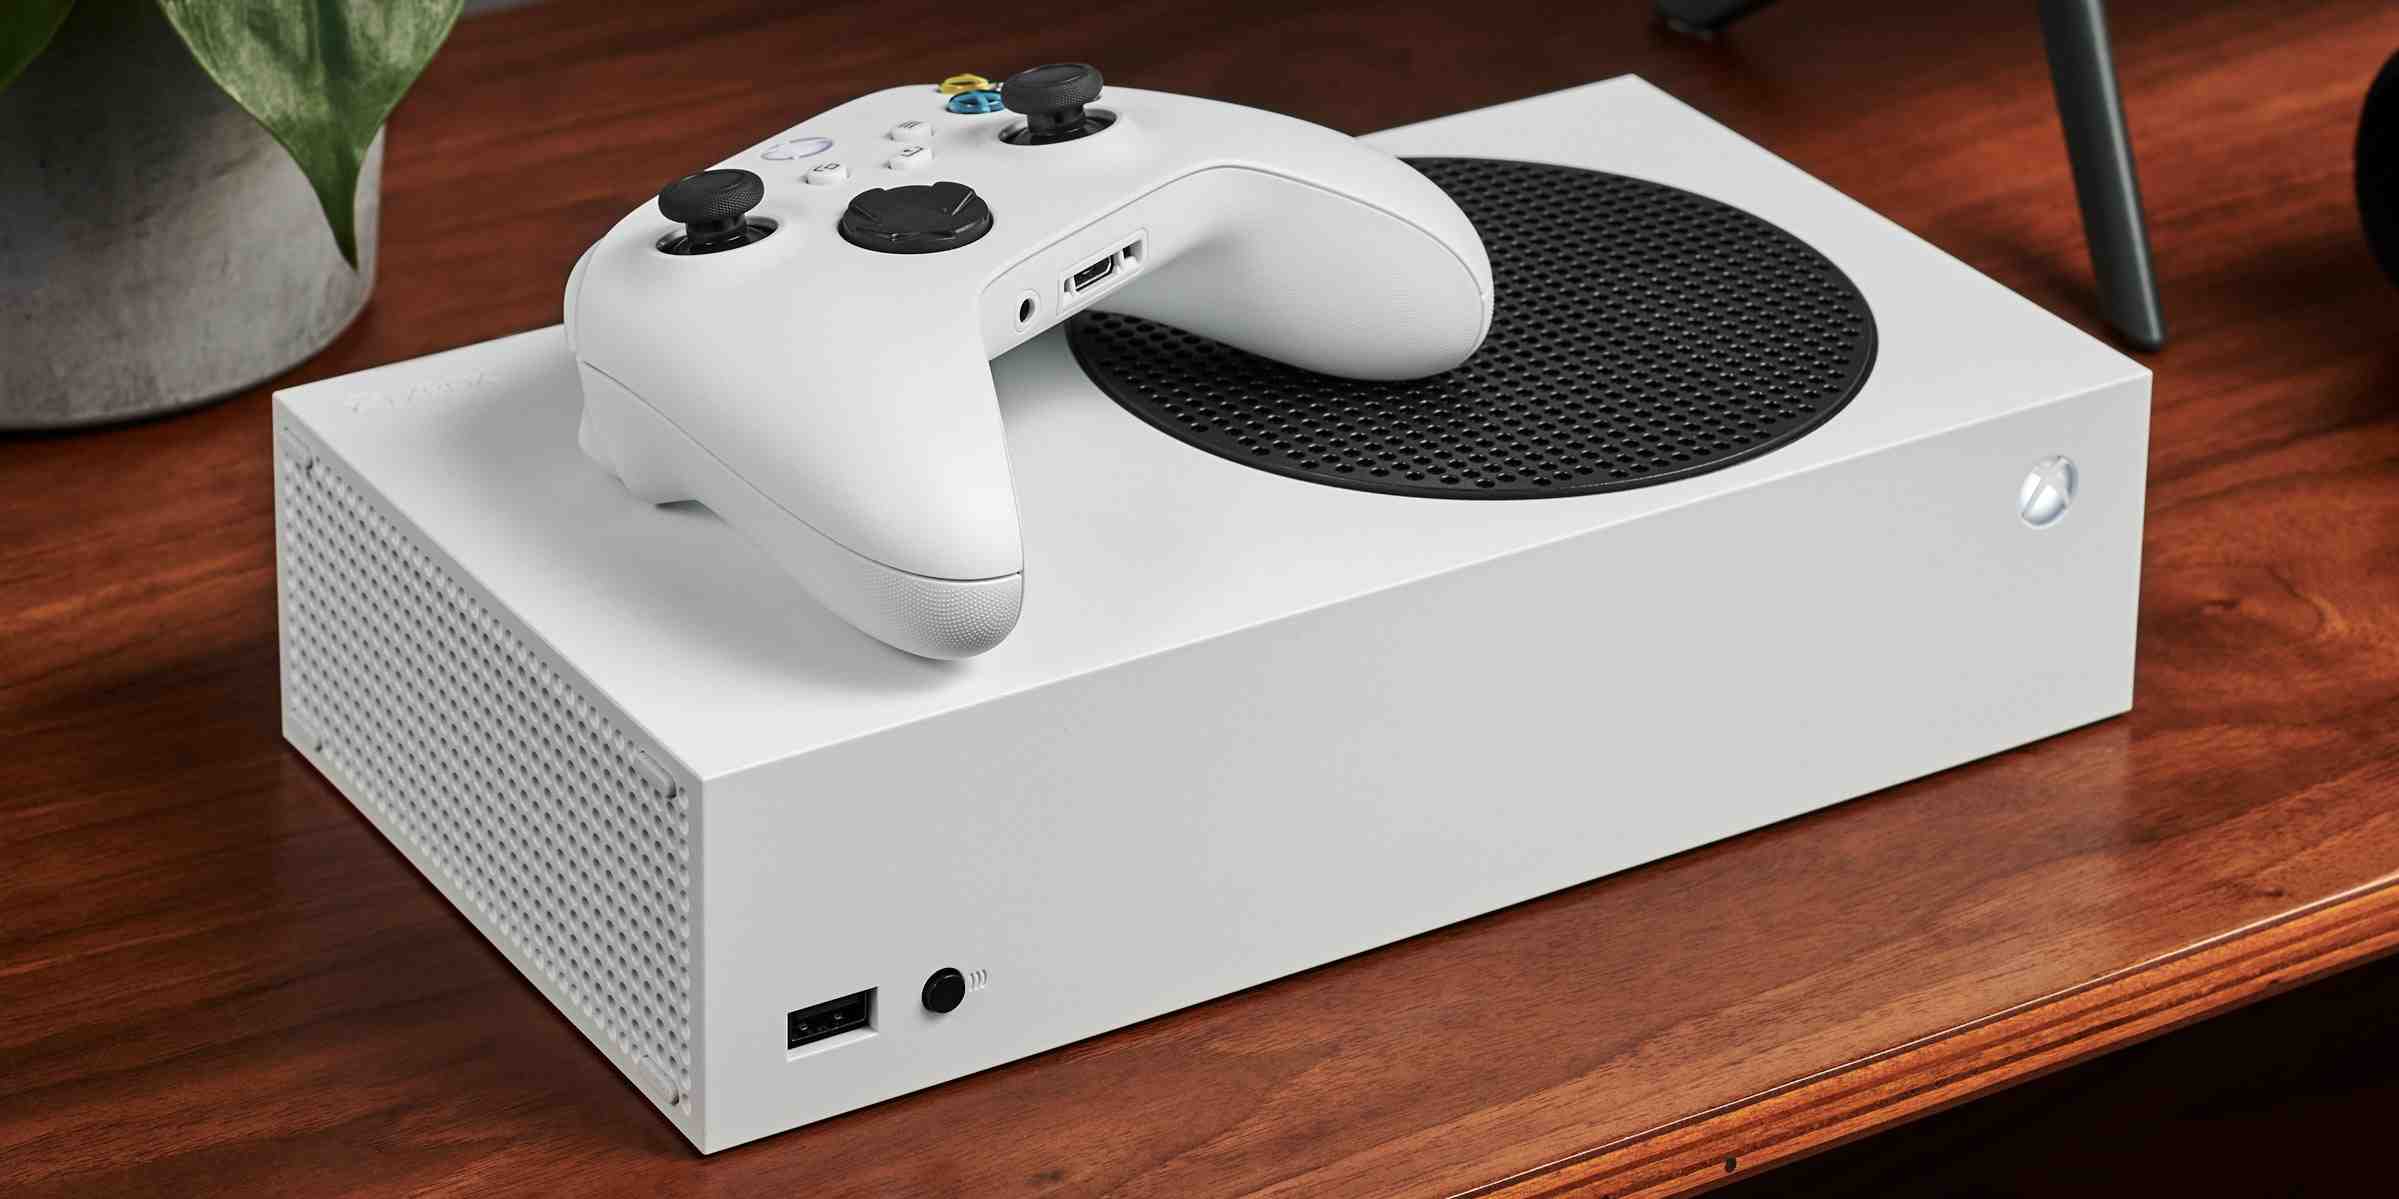 Comment désactiver la manette de la Xbox sur un PC ?